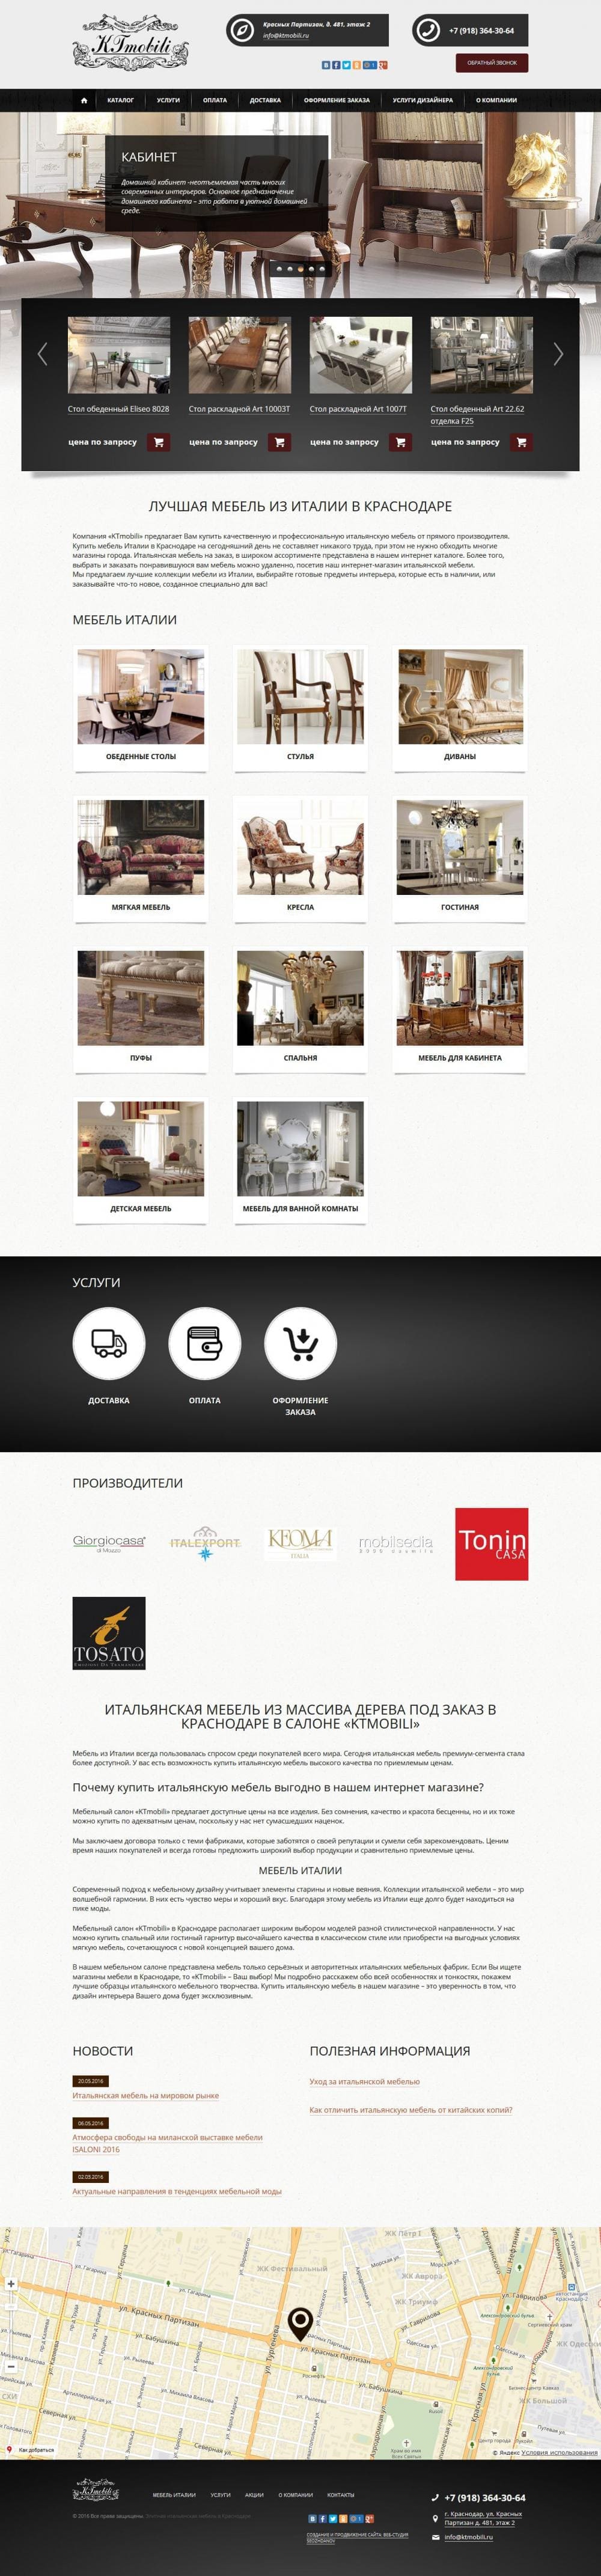 Разработка и раскрутка сайта магазина итальянской мебели «KTmobili»